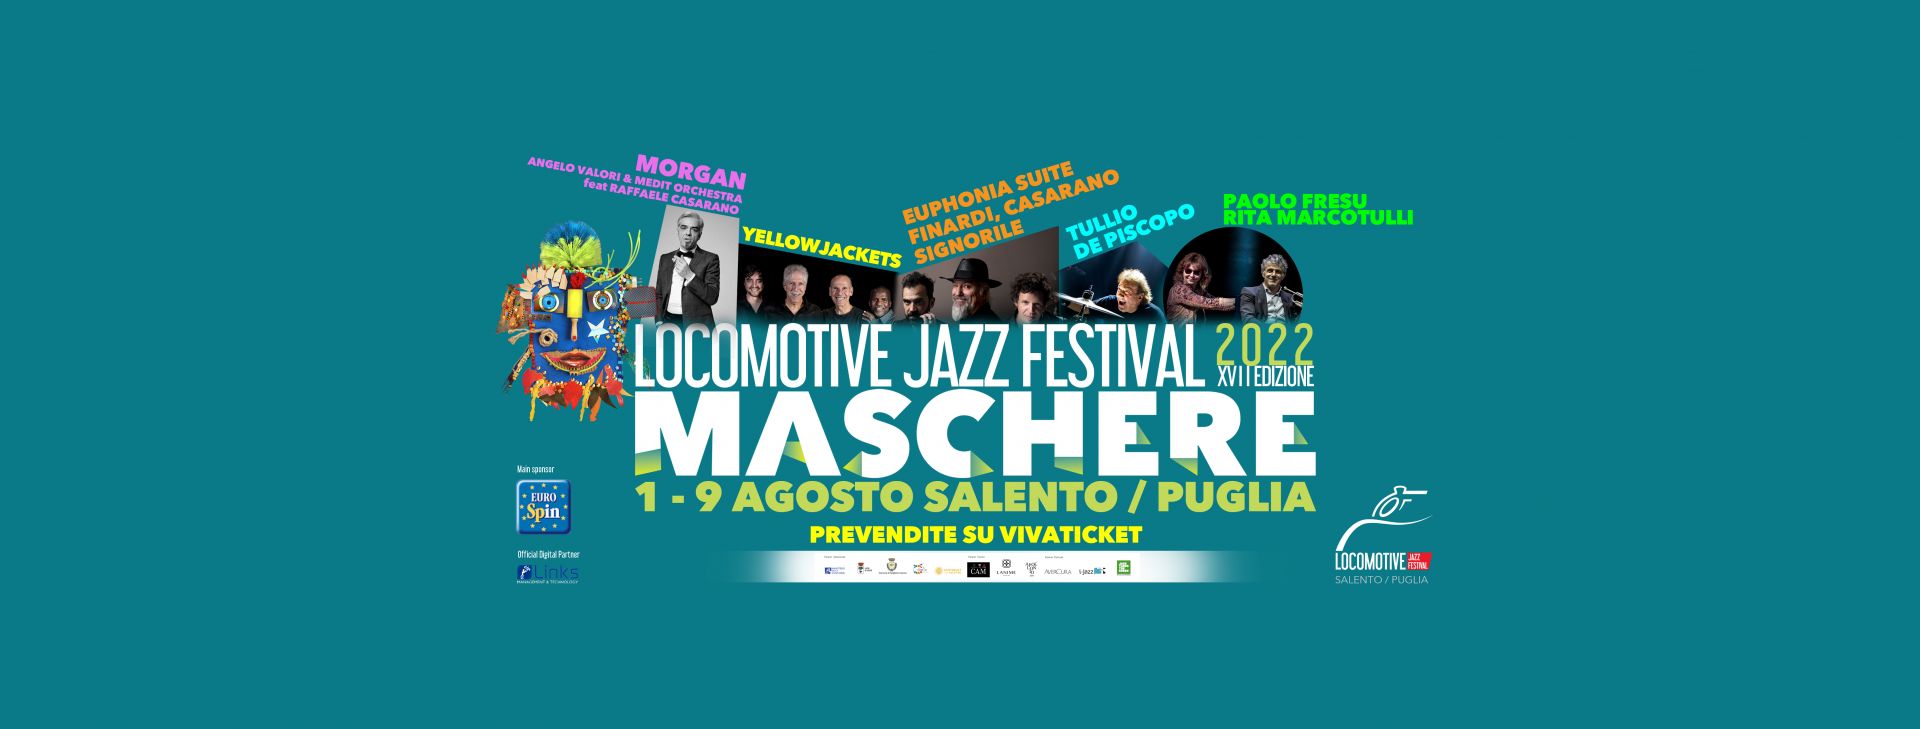 A Sogliano Cavour tutto pronto per il ritorno del ‘Locomotive Jazz Festival’